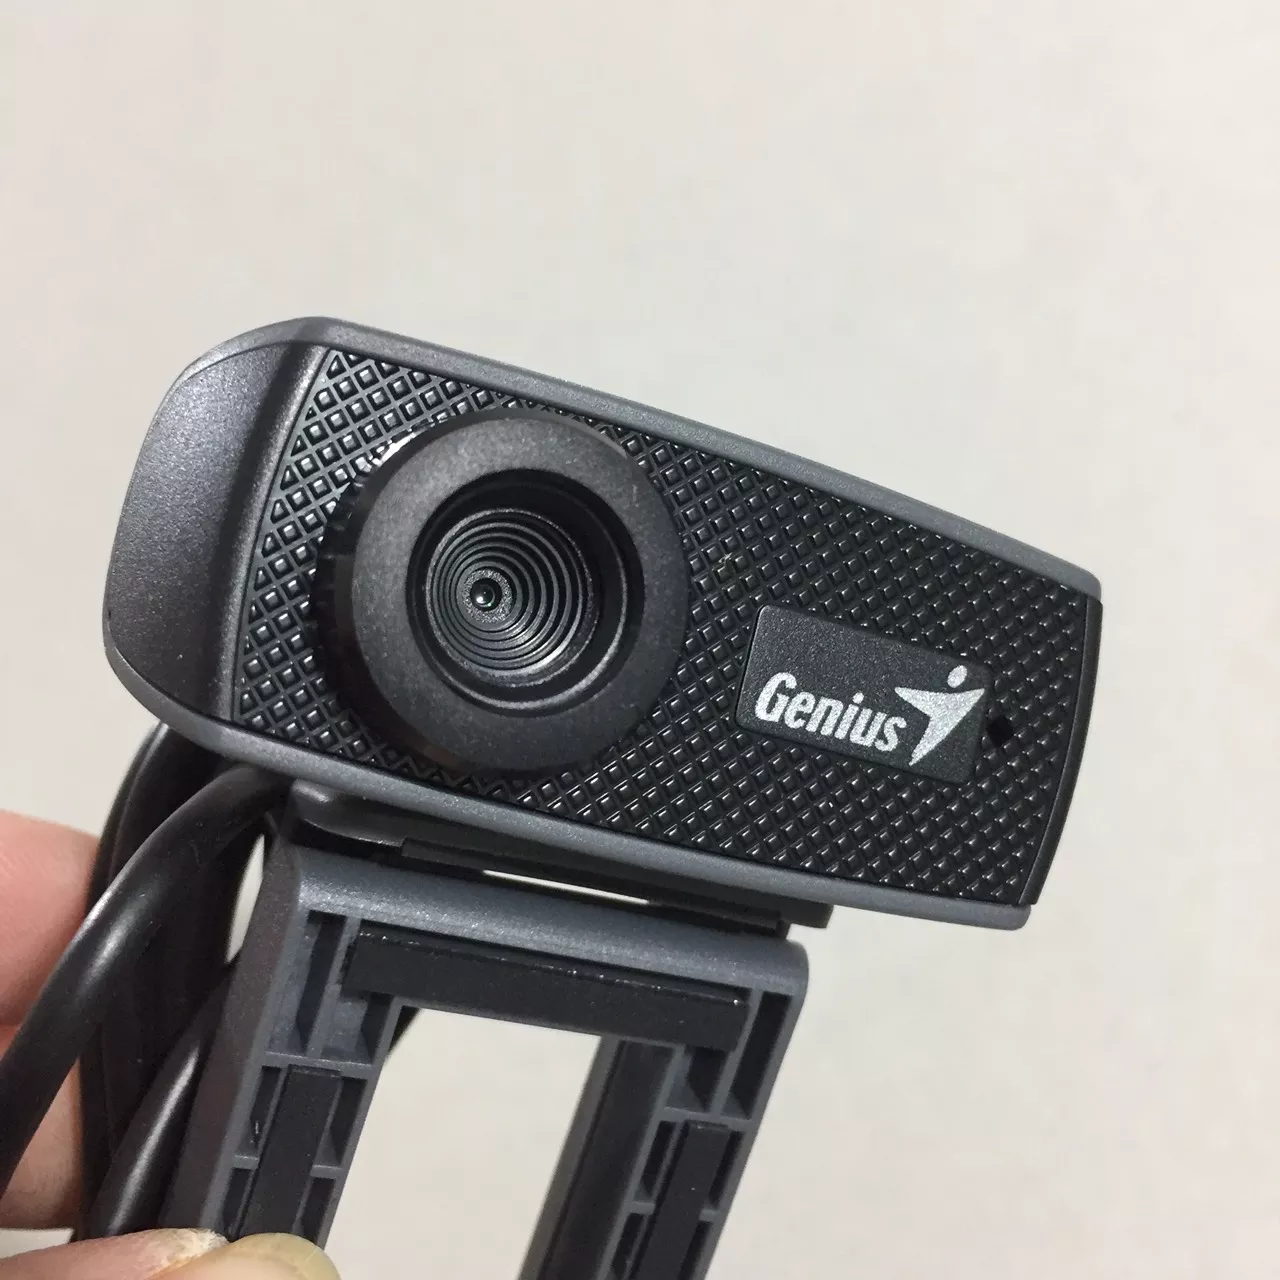 Webcam 720p HD tích hợp mic Genius 1000X V2 model RS2 - Hàng chính hãng